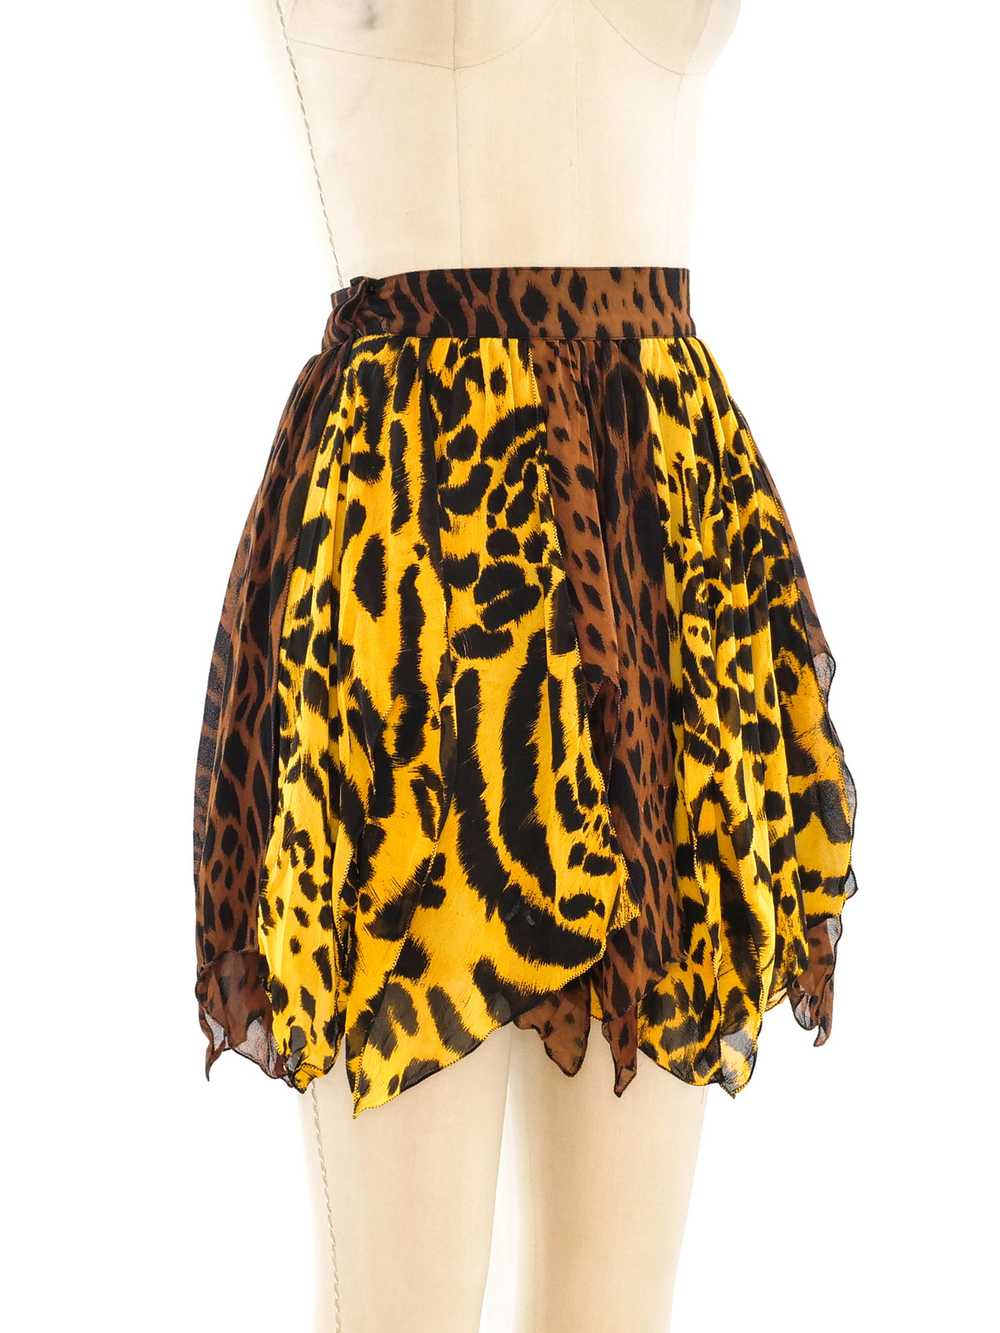 Gianni Versace Animal Printed Silk Skirt - image 5